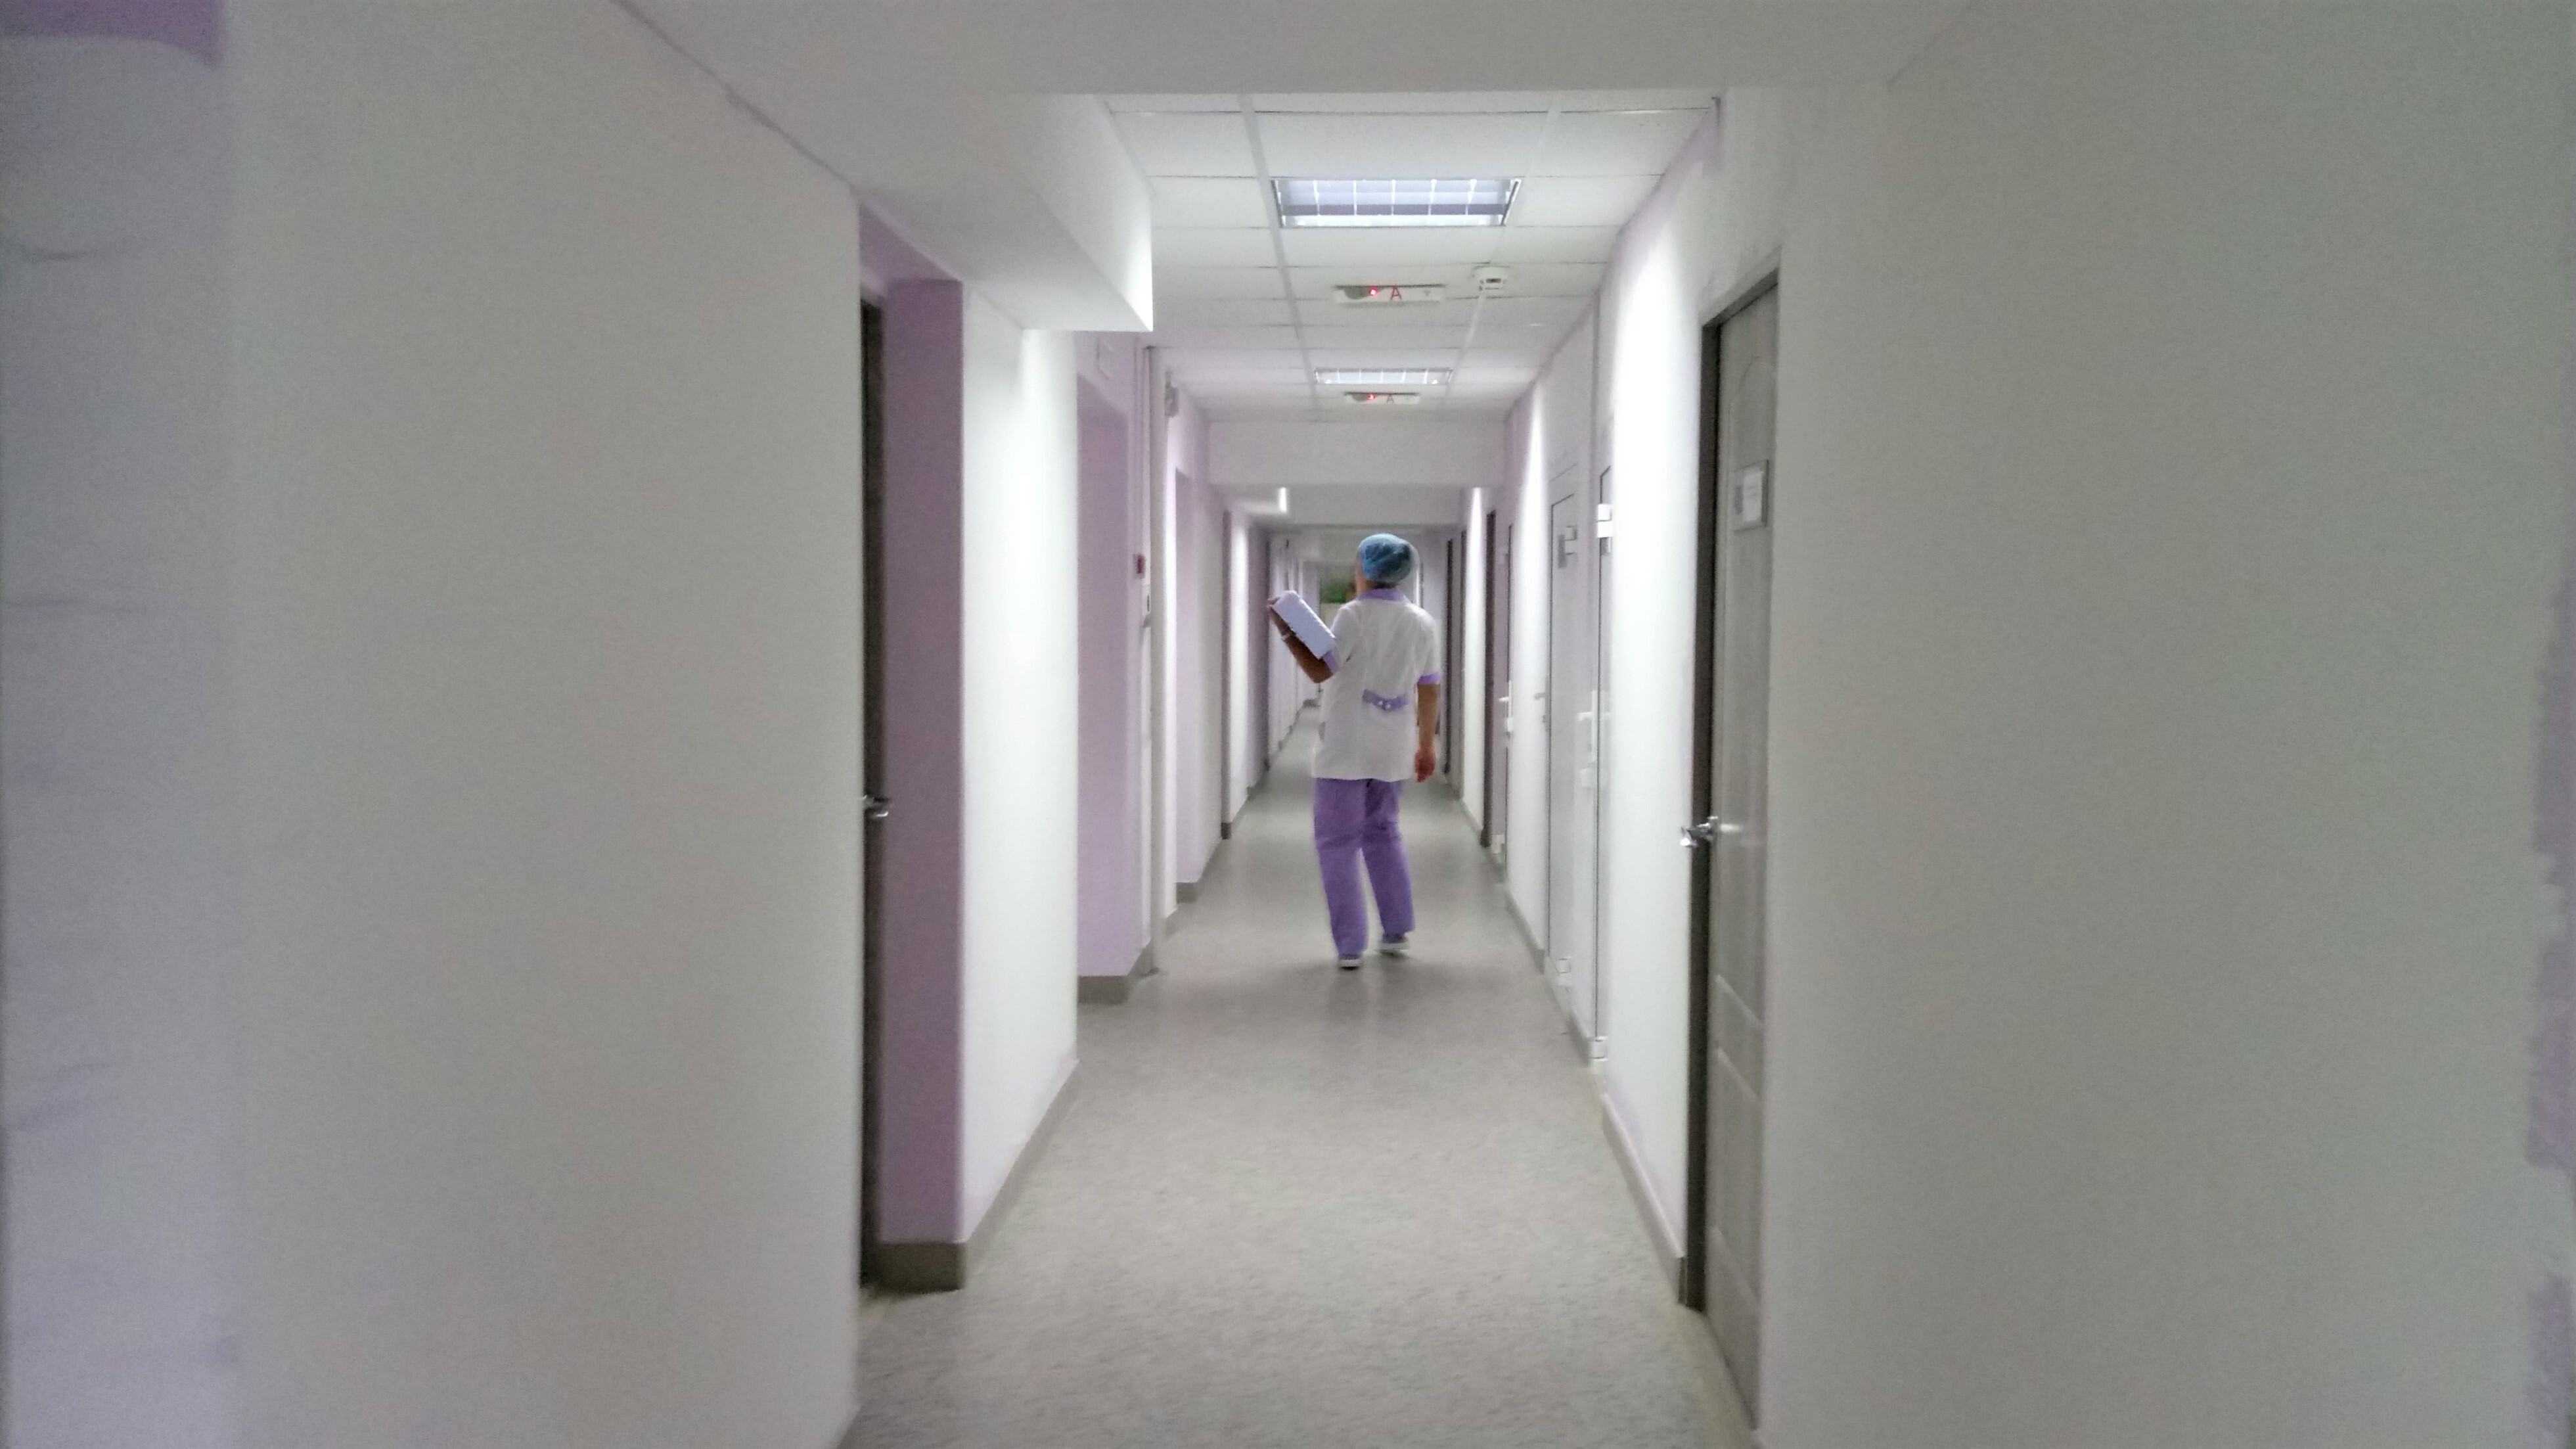 Рассказывавшую об унижениях на работе медсестру в ХМАО обвинили в воровстве